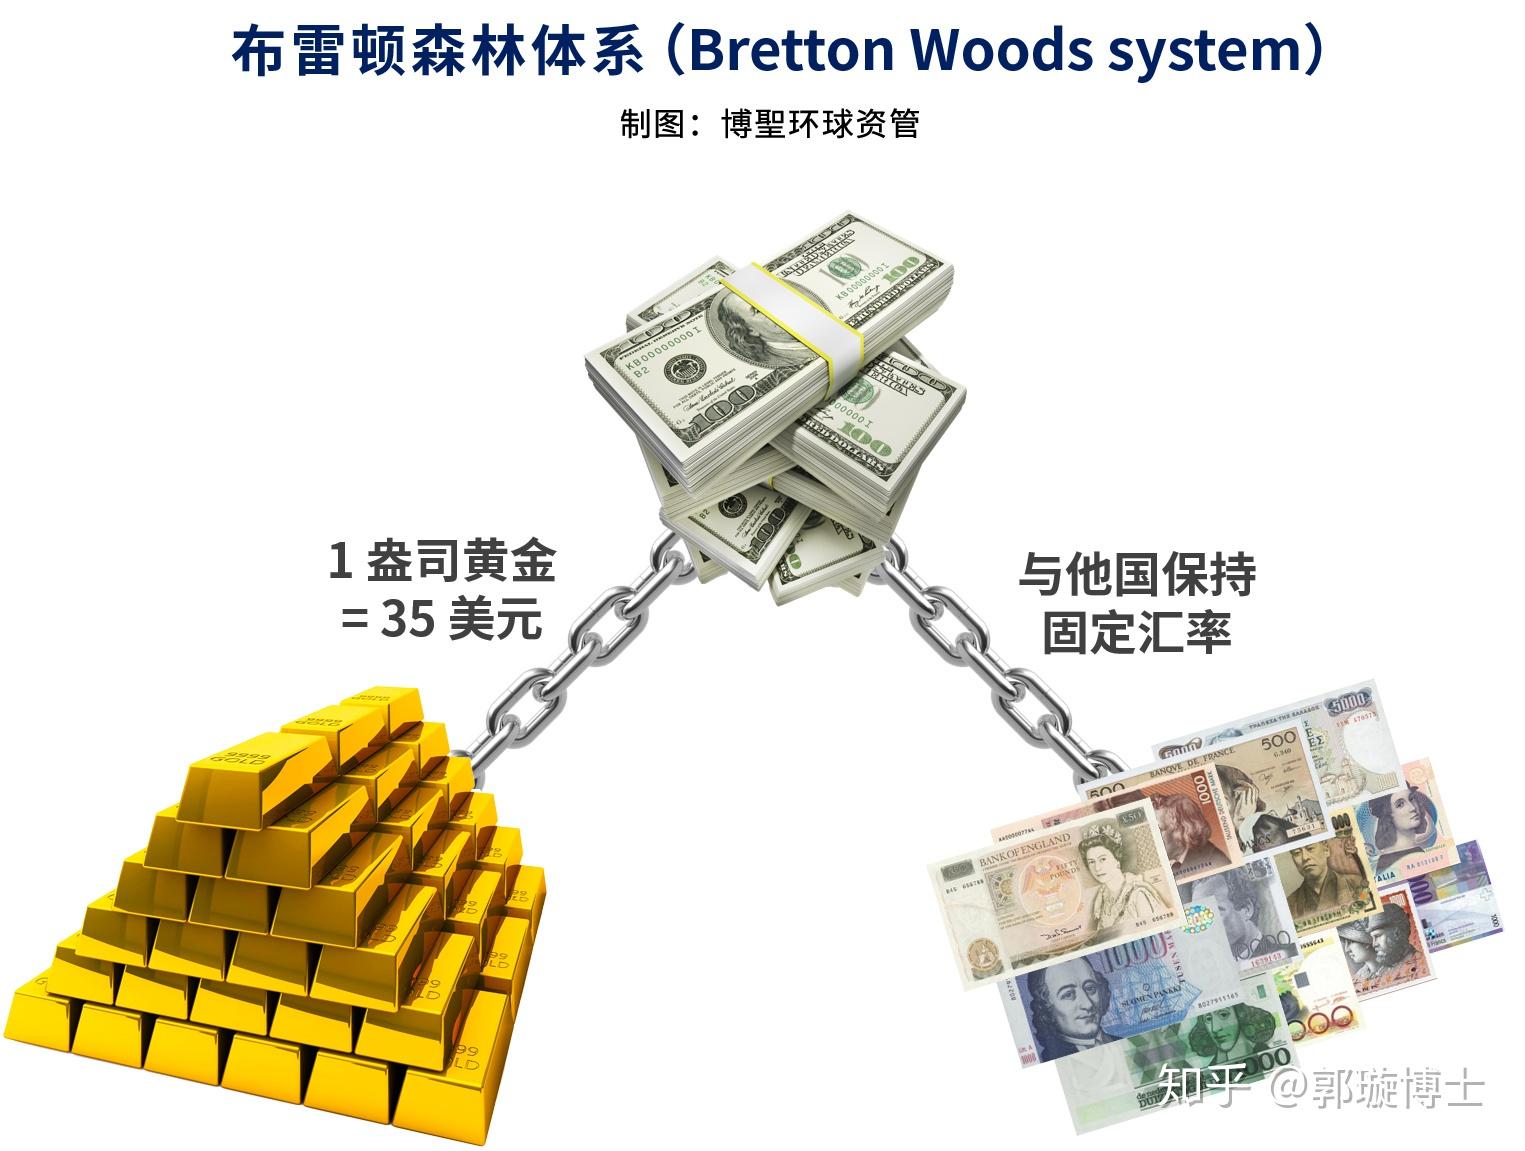 三,黄金与美元:布雷顿森林体系